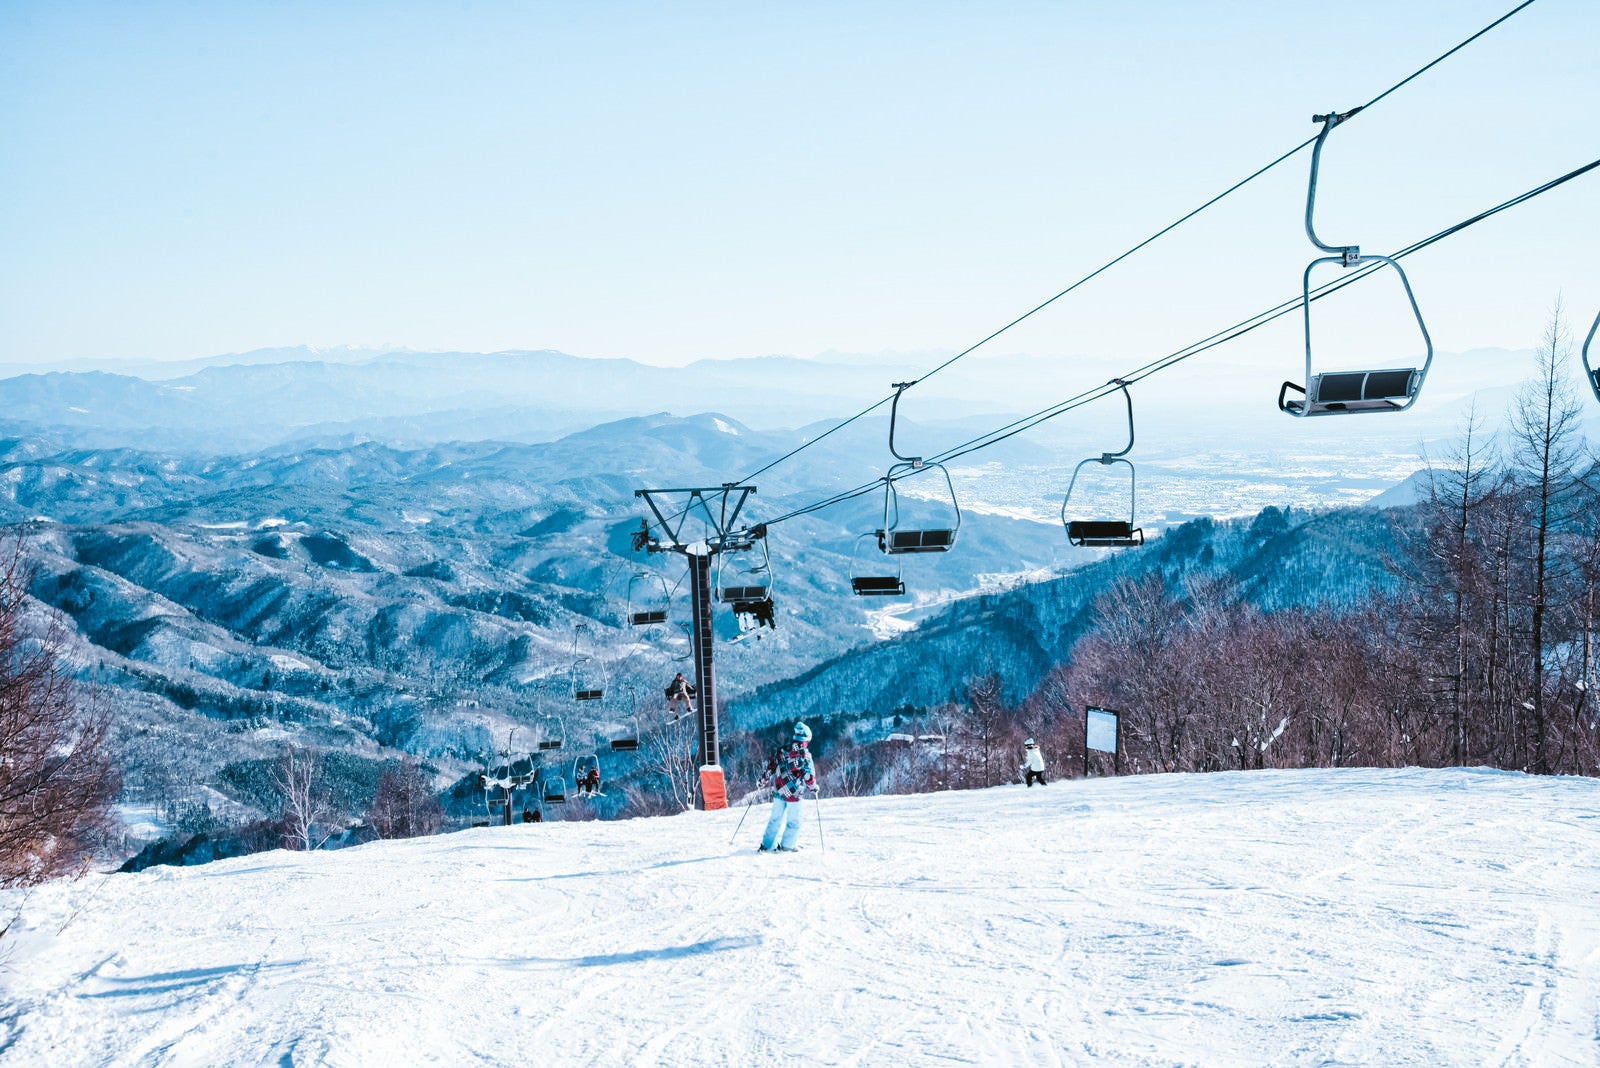 「ゲレンデを滑るスキーヤーとリフト」の写真